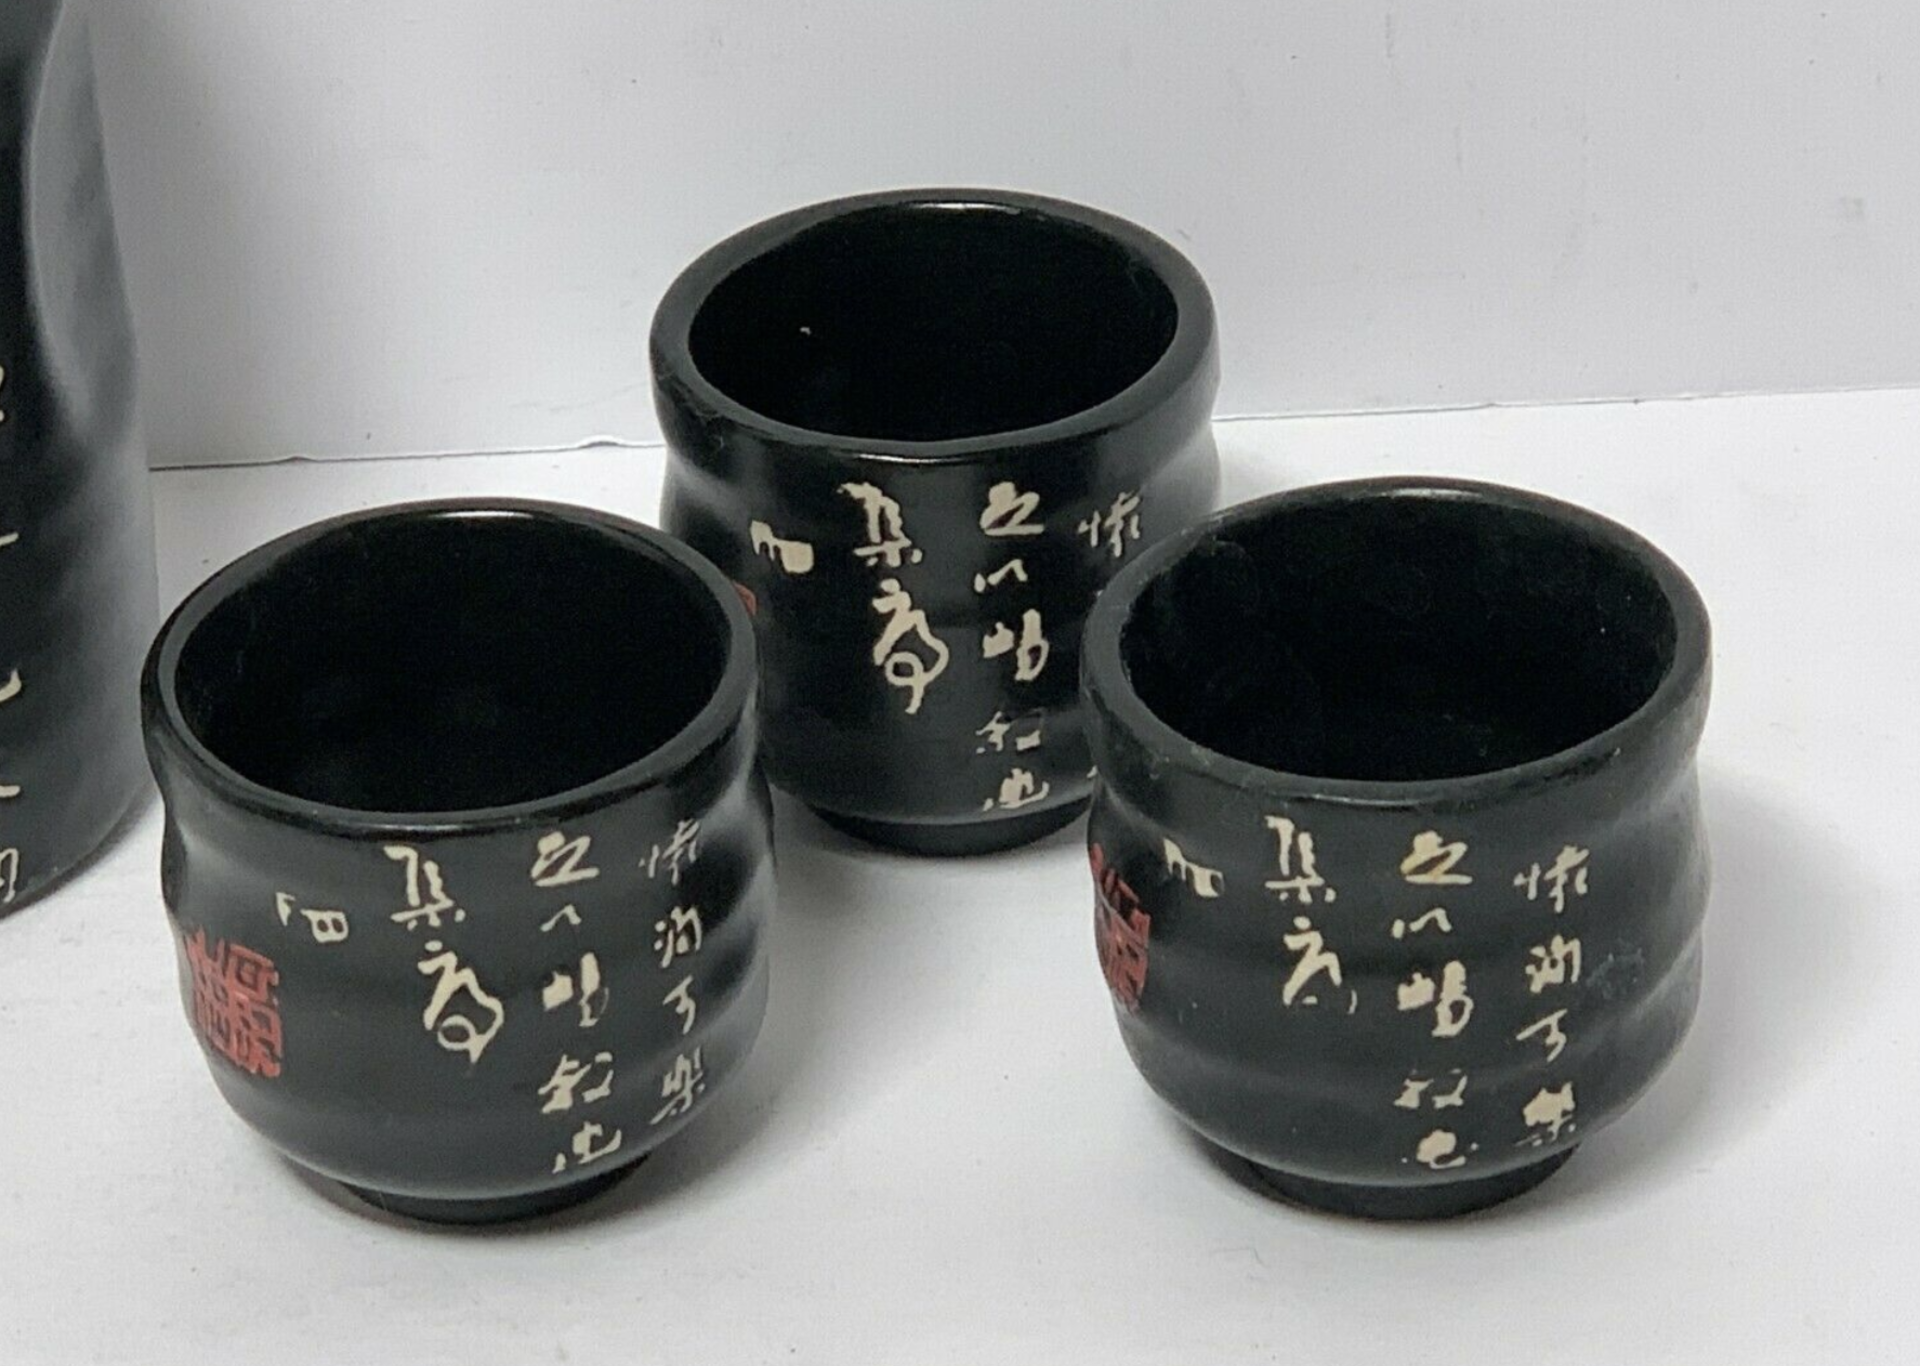 Porcelain Saki Set - 4 Piece - Pourer w/ 3 Cups - Image 3 of 3